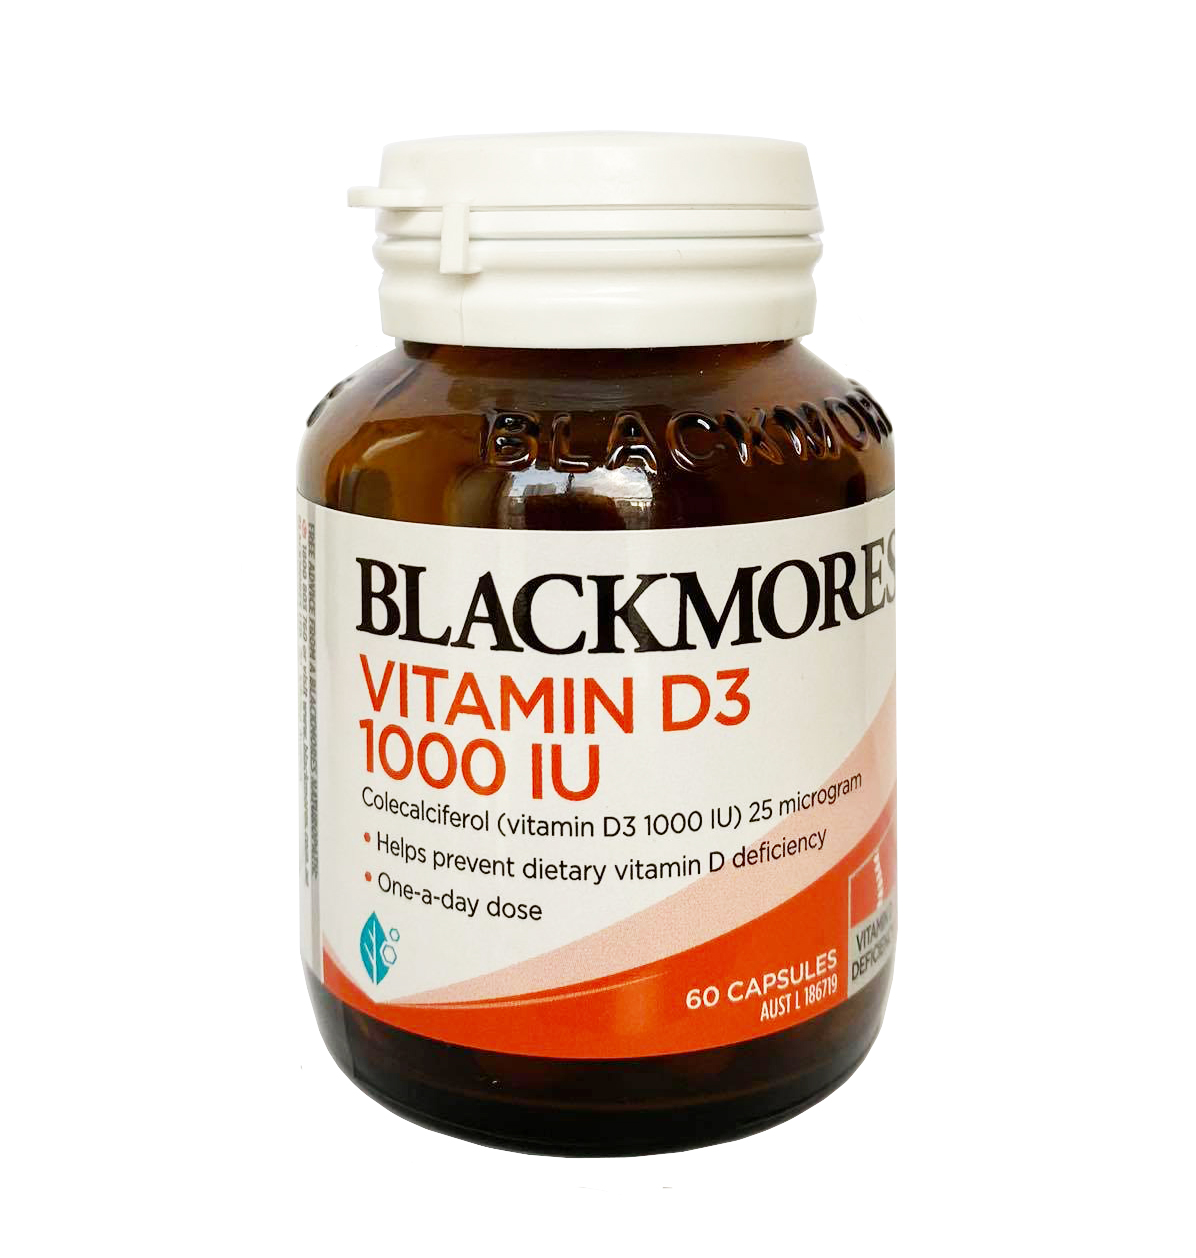  Vitamin d3 blackmores : Tác dụng và lợi ích cho sức khỏe của bạn